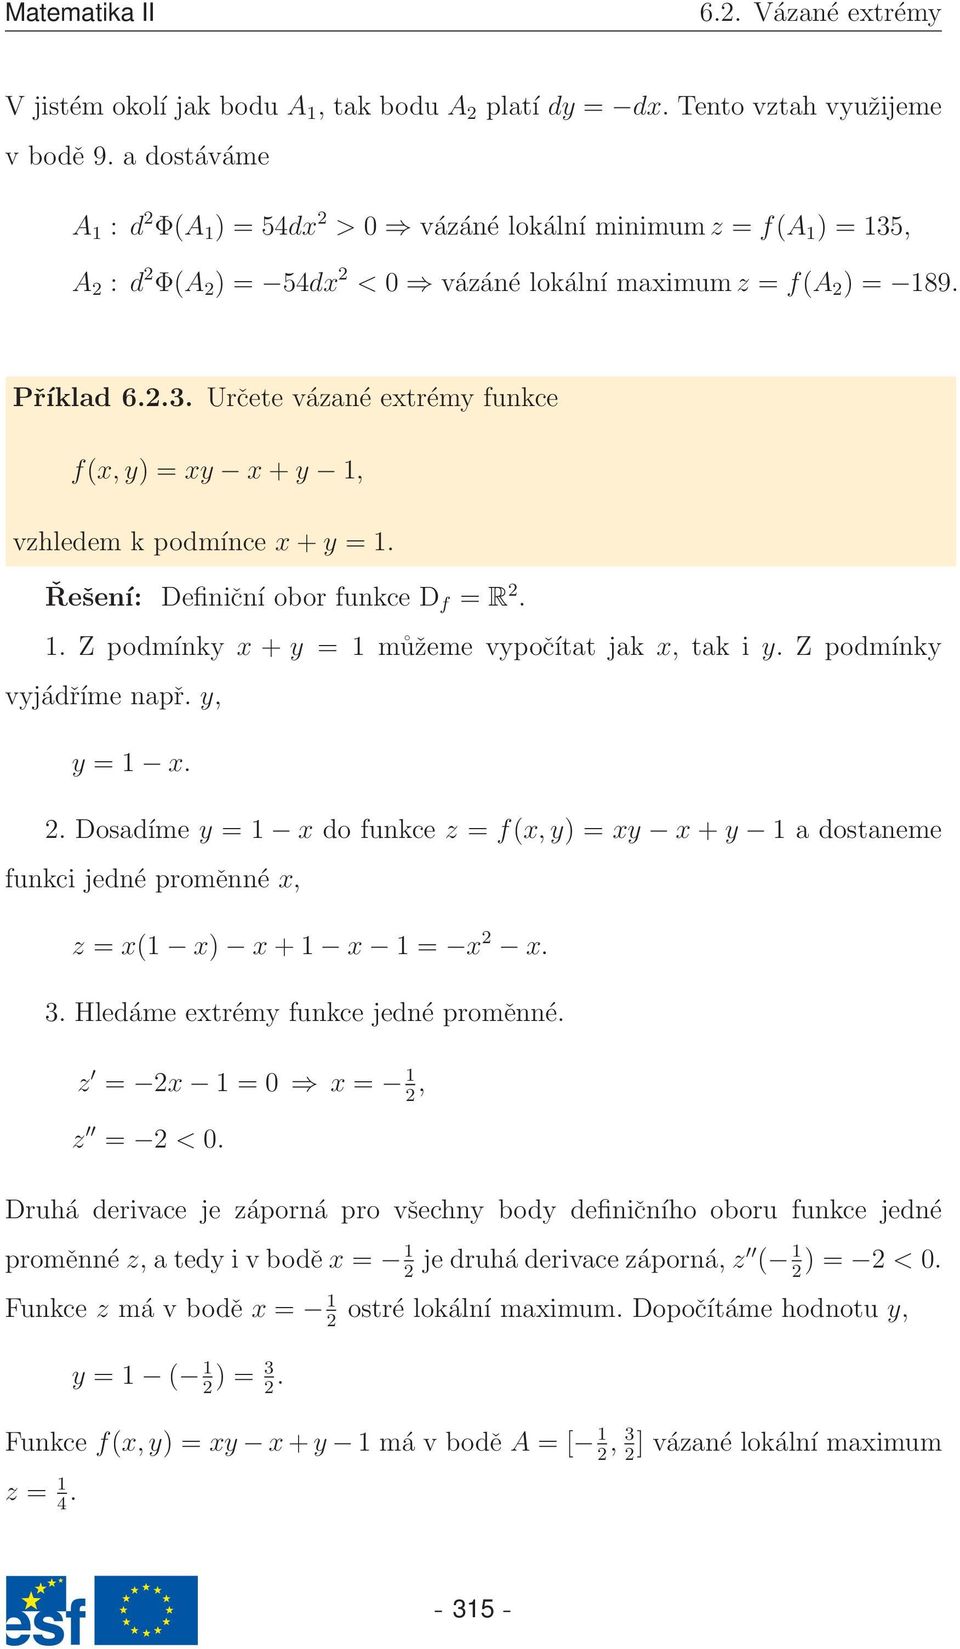 Řešení: Definiční obor funkce D f = R 2. 1. Z podmínky x + y = 1 můžeme vypočítat jak x, tak i y. Z podmínky vyjádříme např. y, y = 1 x. 2. Dosadíme y = 1 x do funkce z = f(x,y) = xy x + y 1 a dostaneme funkci jedné proměnné x, z = x(1 x) x + 1 x 1 = x 2 x.